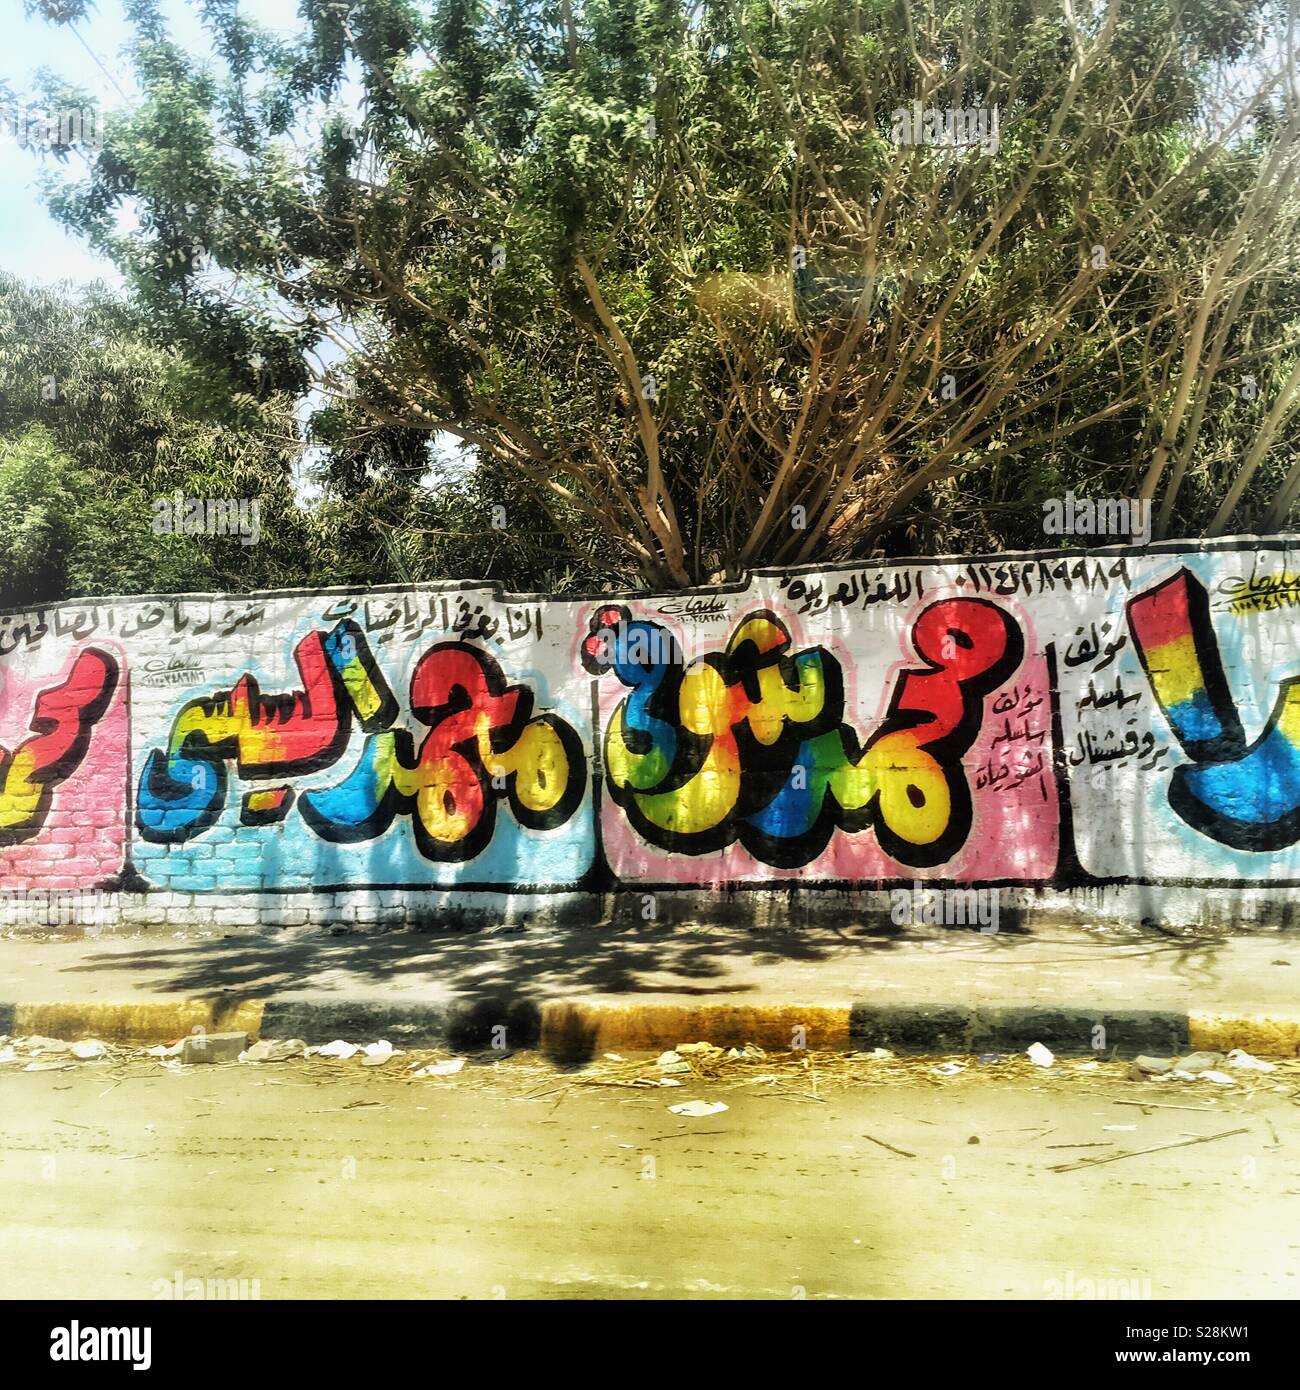 Cairo graffiti Stock Photo